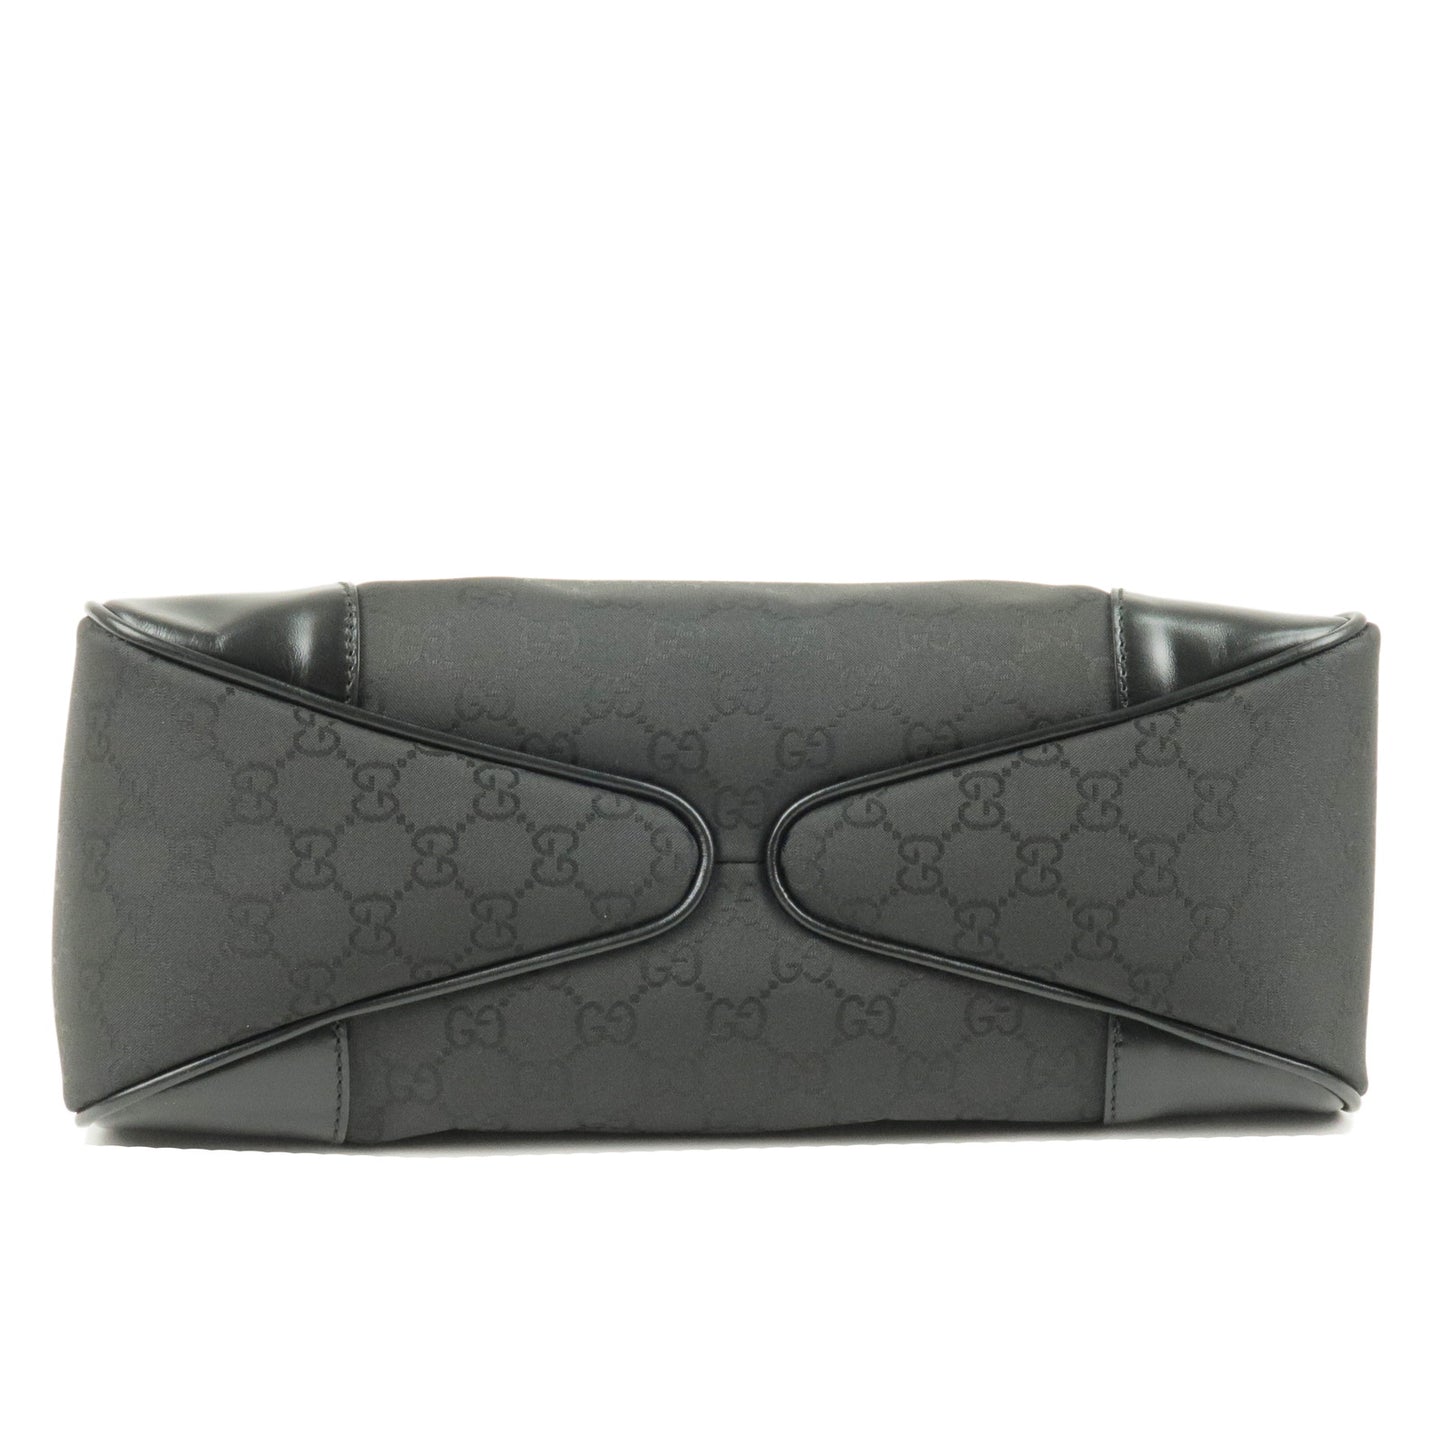 GUCCI GG Nylon Leather Shoulder Bag Hand Bag Black 257265